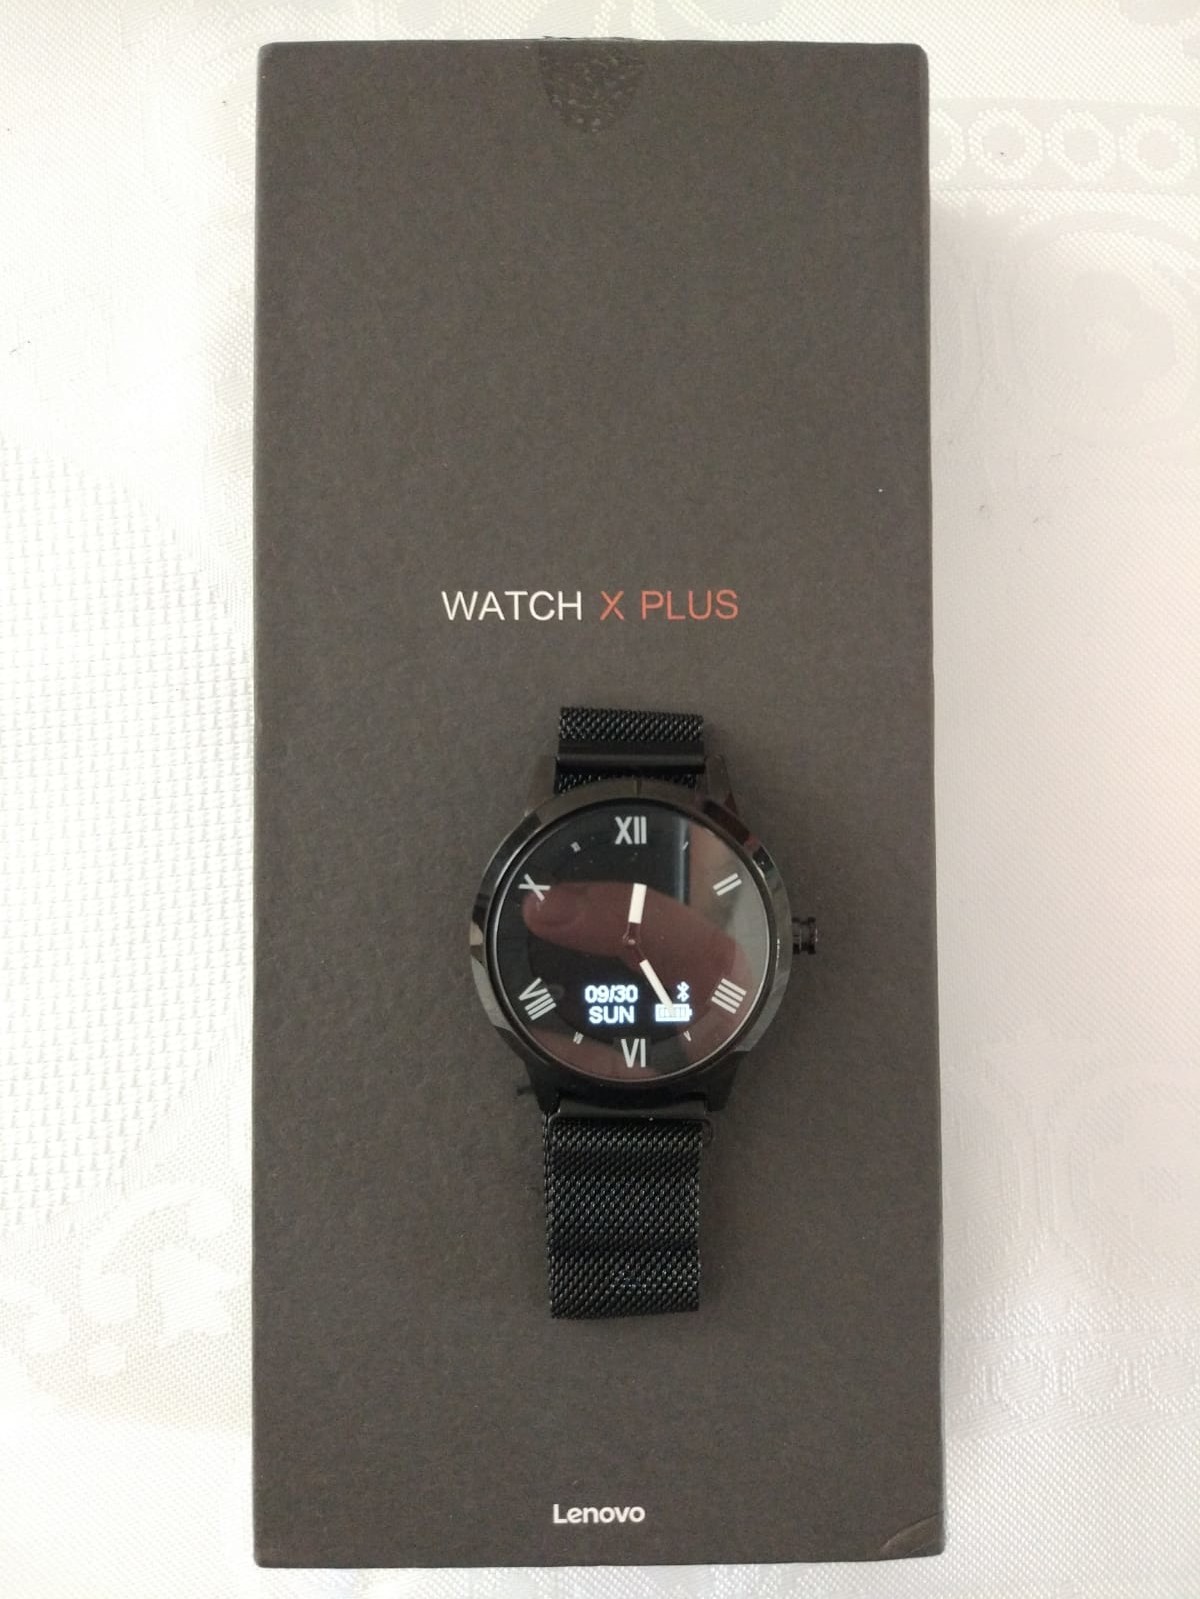 SATILDI - 'SIFIR' Lenovo Watch X Plus Akıllı Saat - 350TL